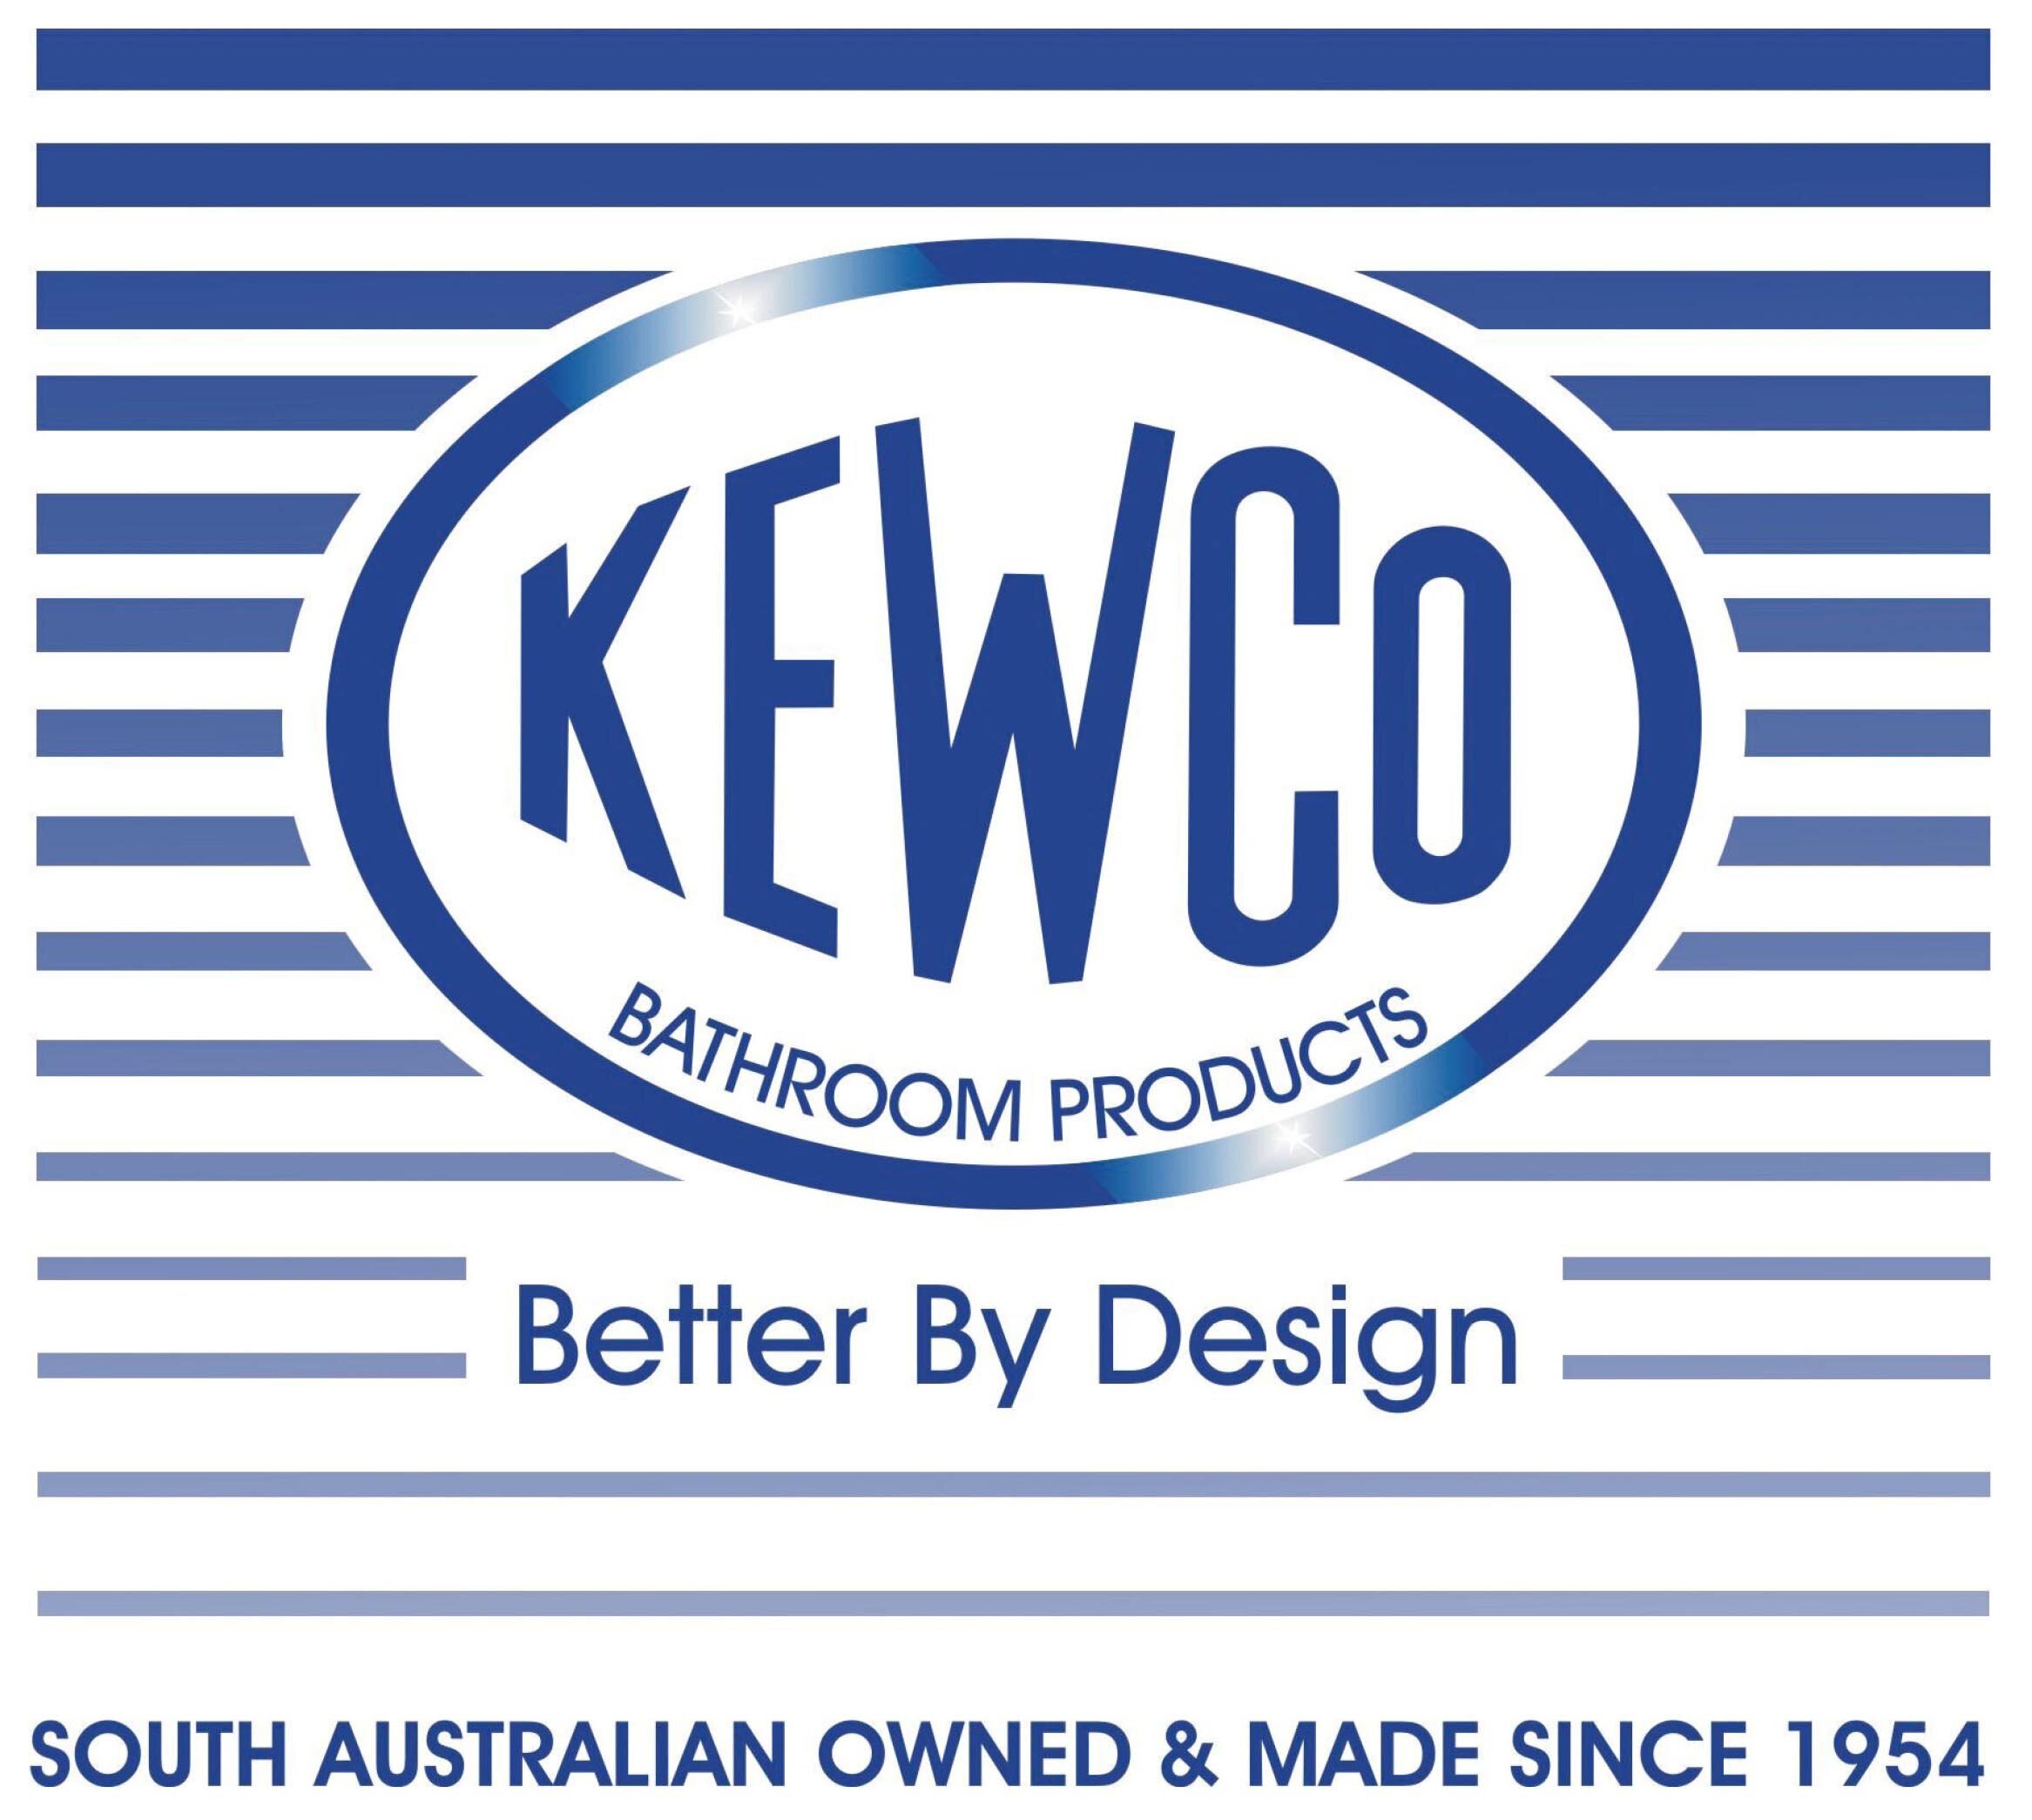 Kewco Logo.jpg